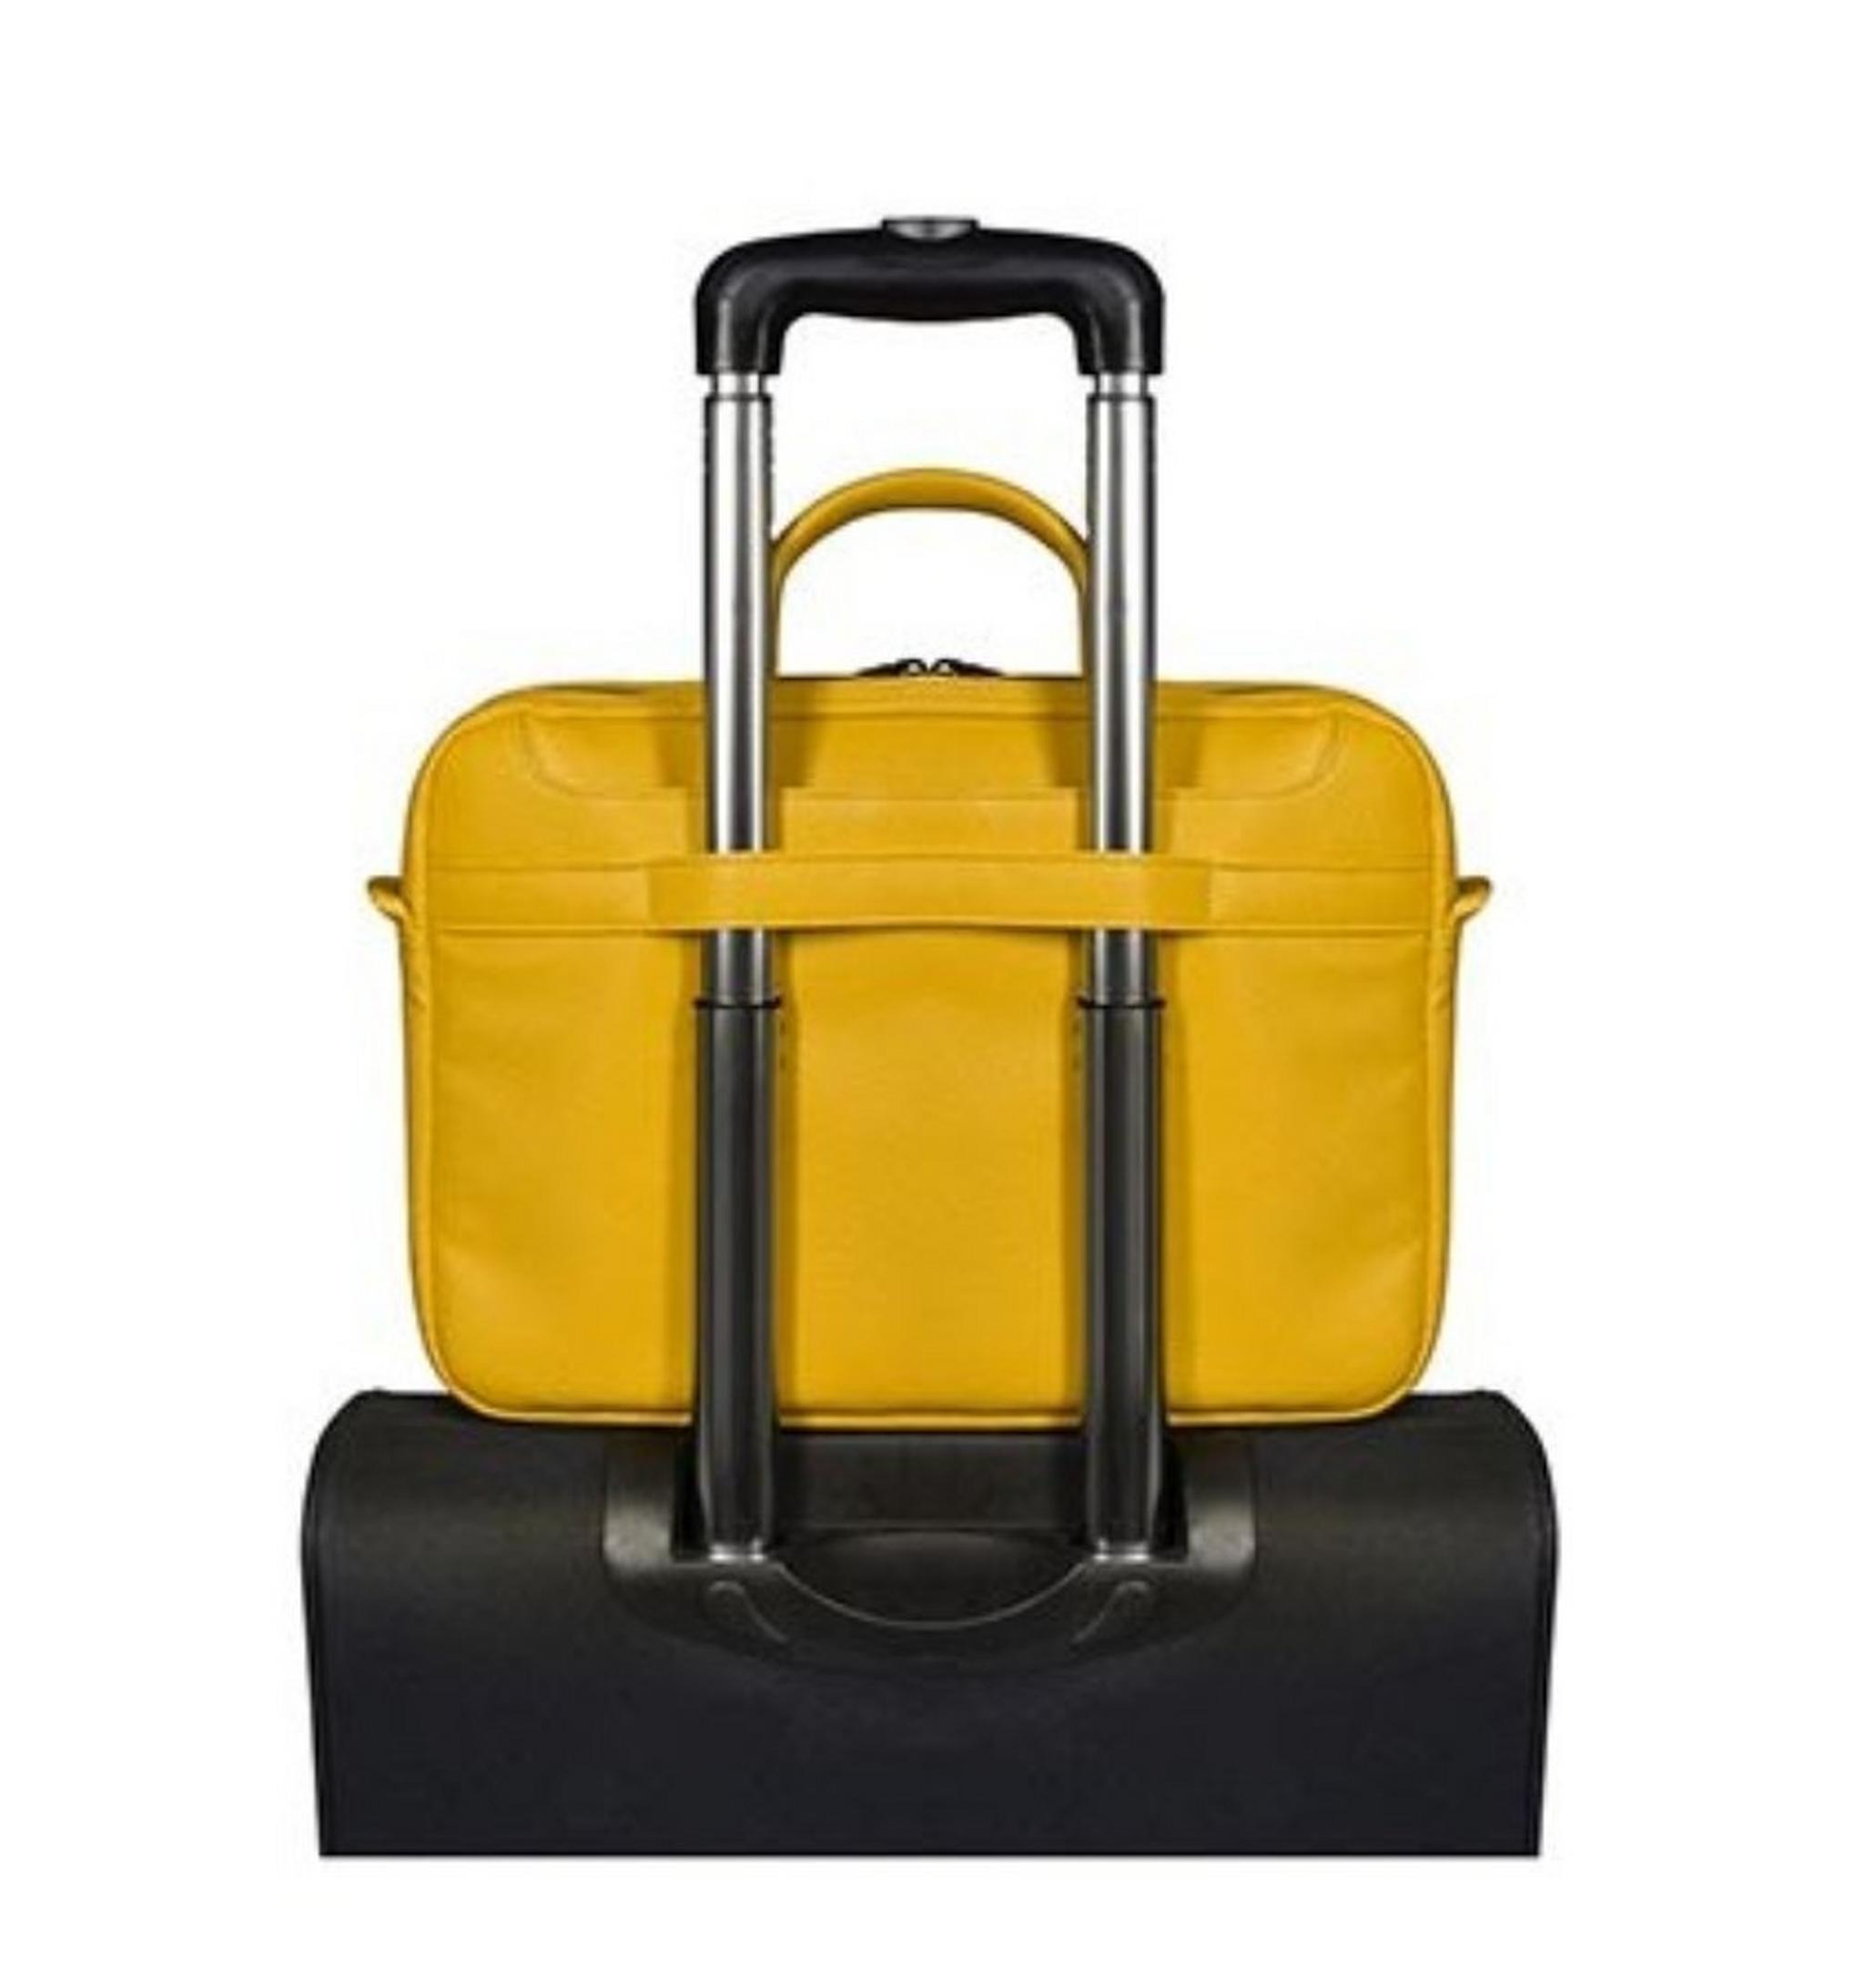 حقيبة لابتوب زيوريخ بحجم 13\14 بوصة من بورت - أصفر